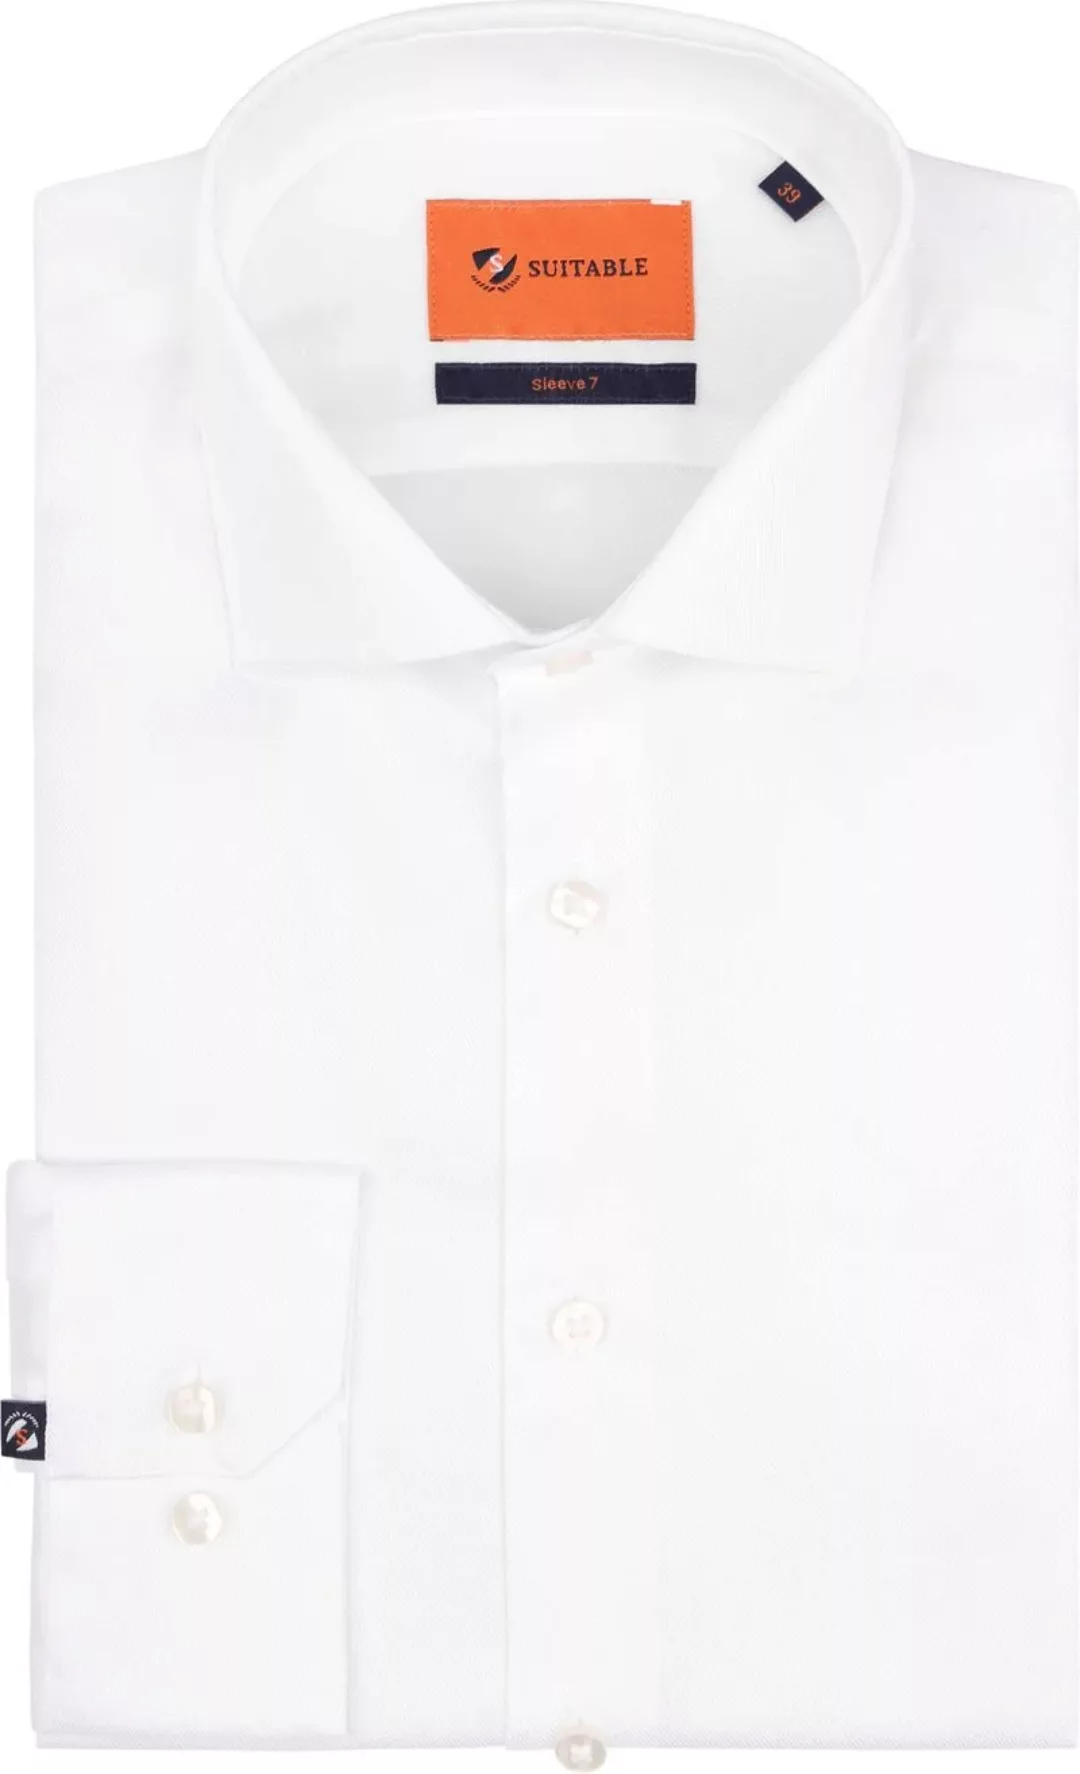 Suitable Hemd Extra Lange Ärmel Twill Weiß - Größe 37 günstig online kaufen